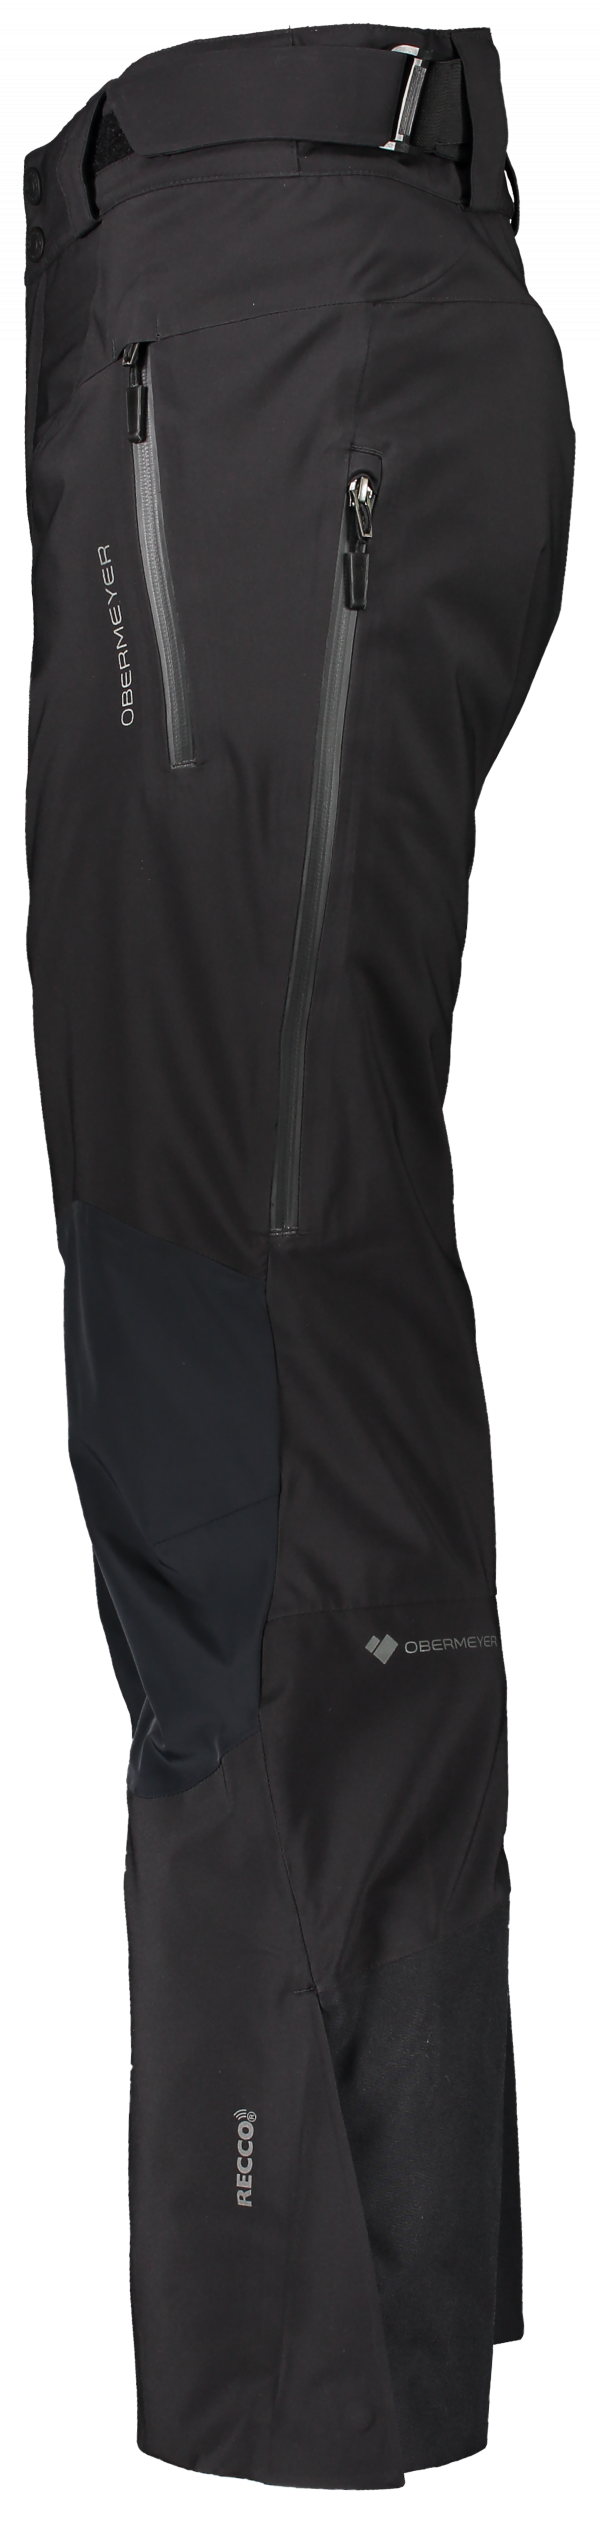 Lyžiarske nohavice Obermeyer Process Pant Black Regular 20